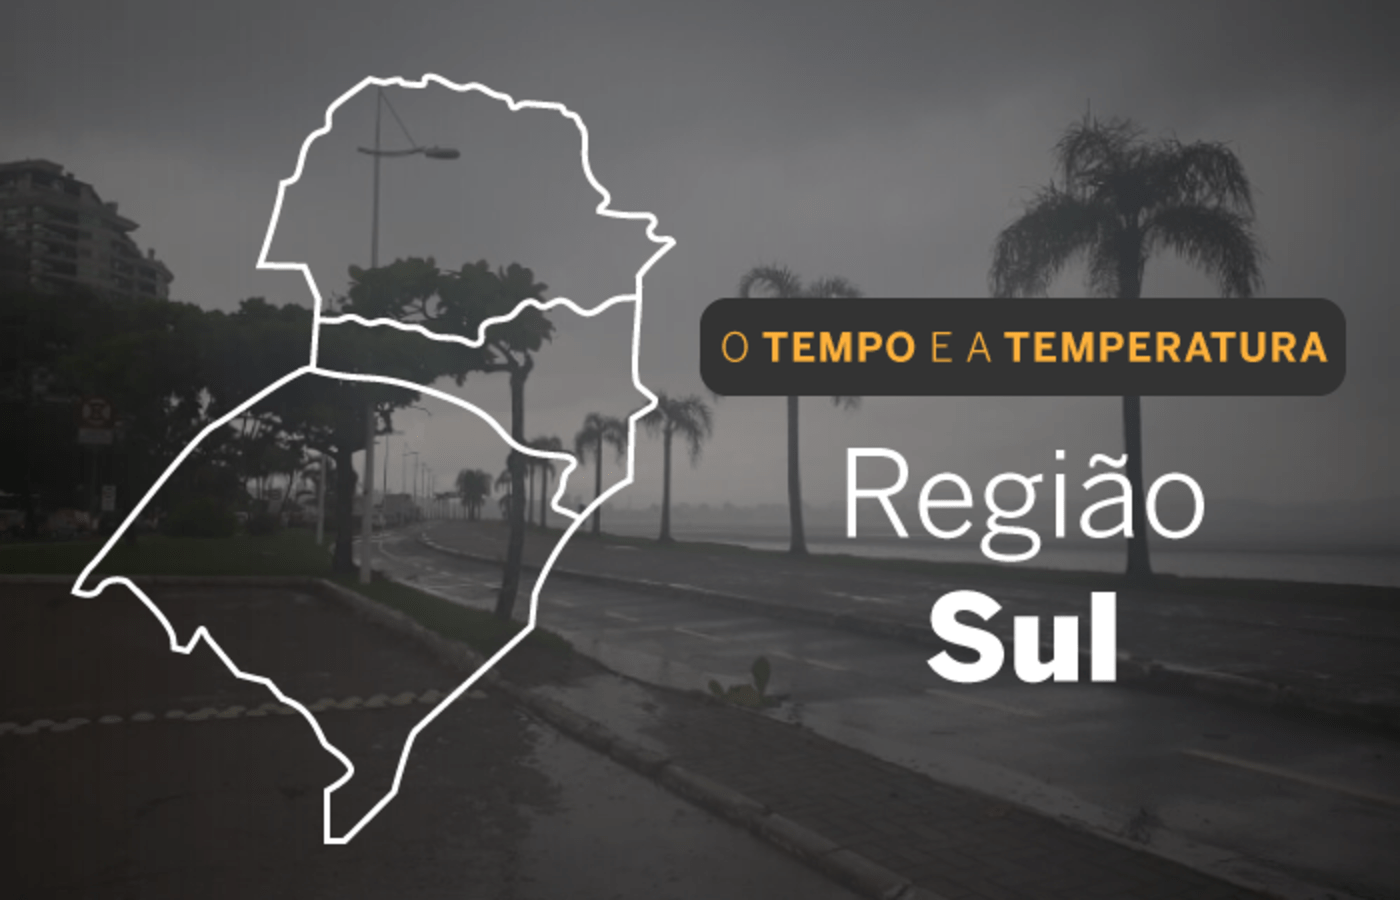 Defesa Civil Nacional alerta para previsao de chuvas intensas no Sul do Pais